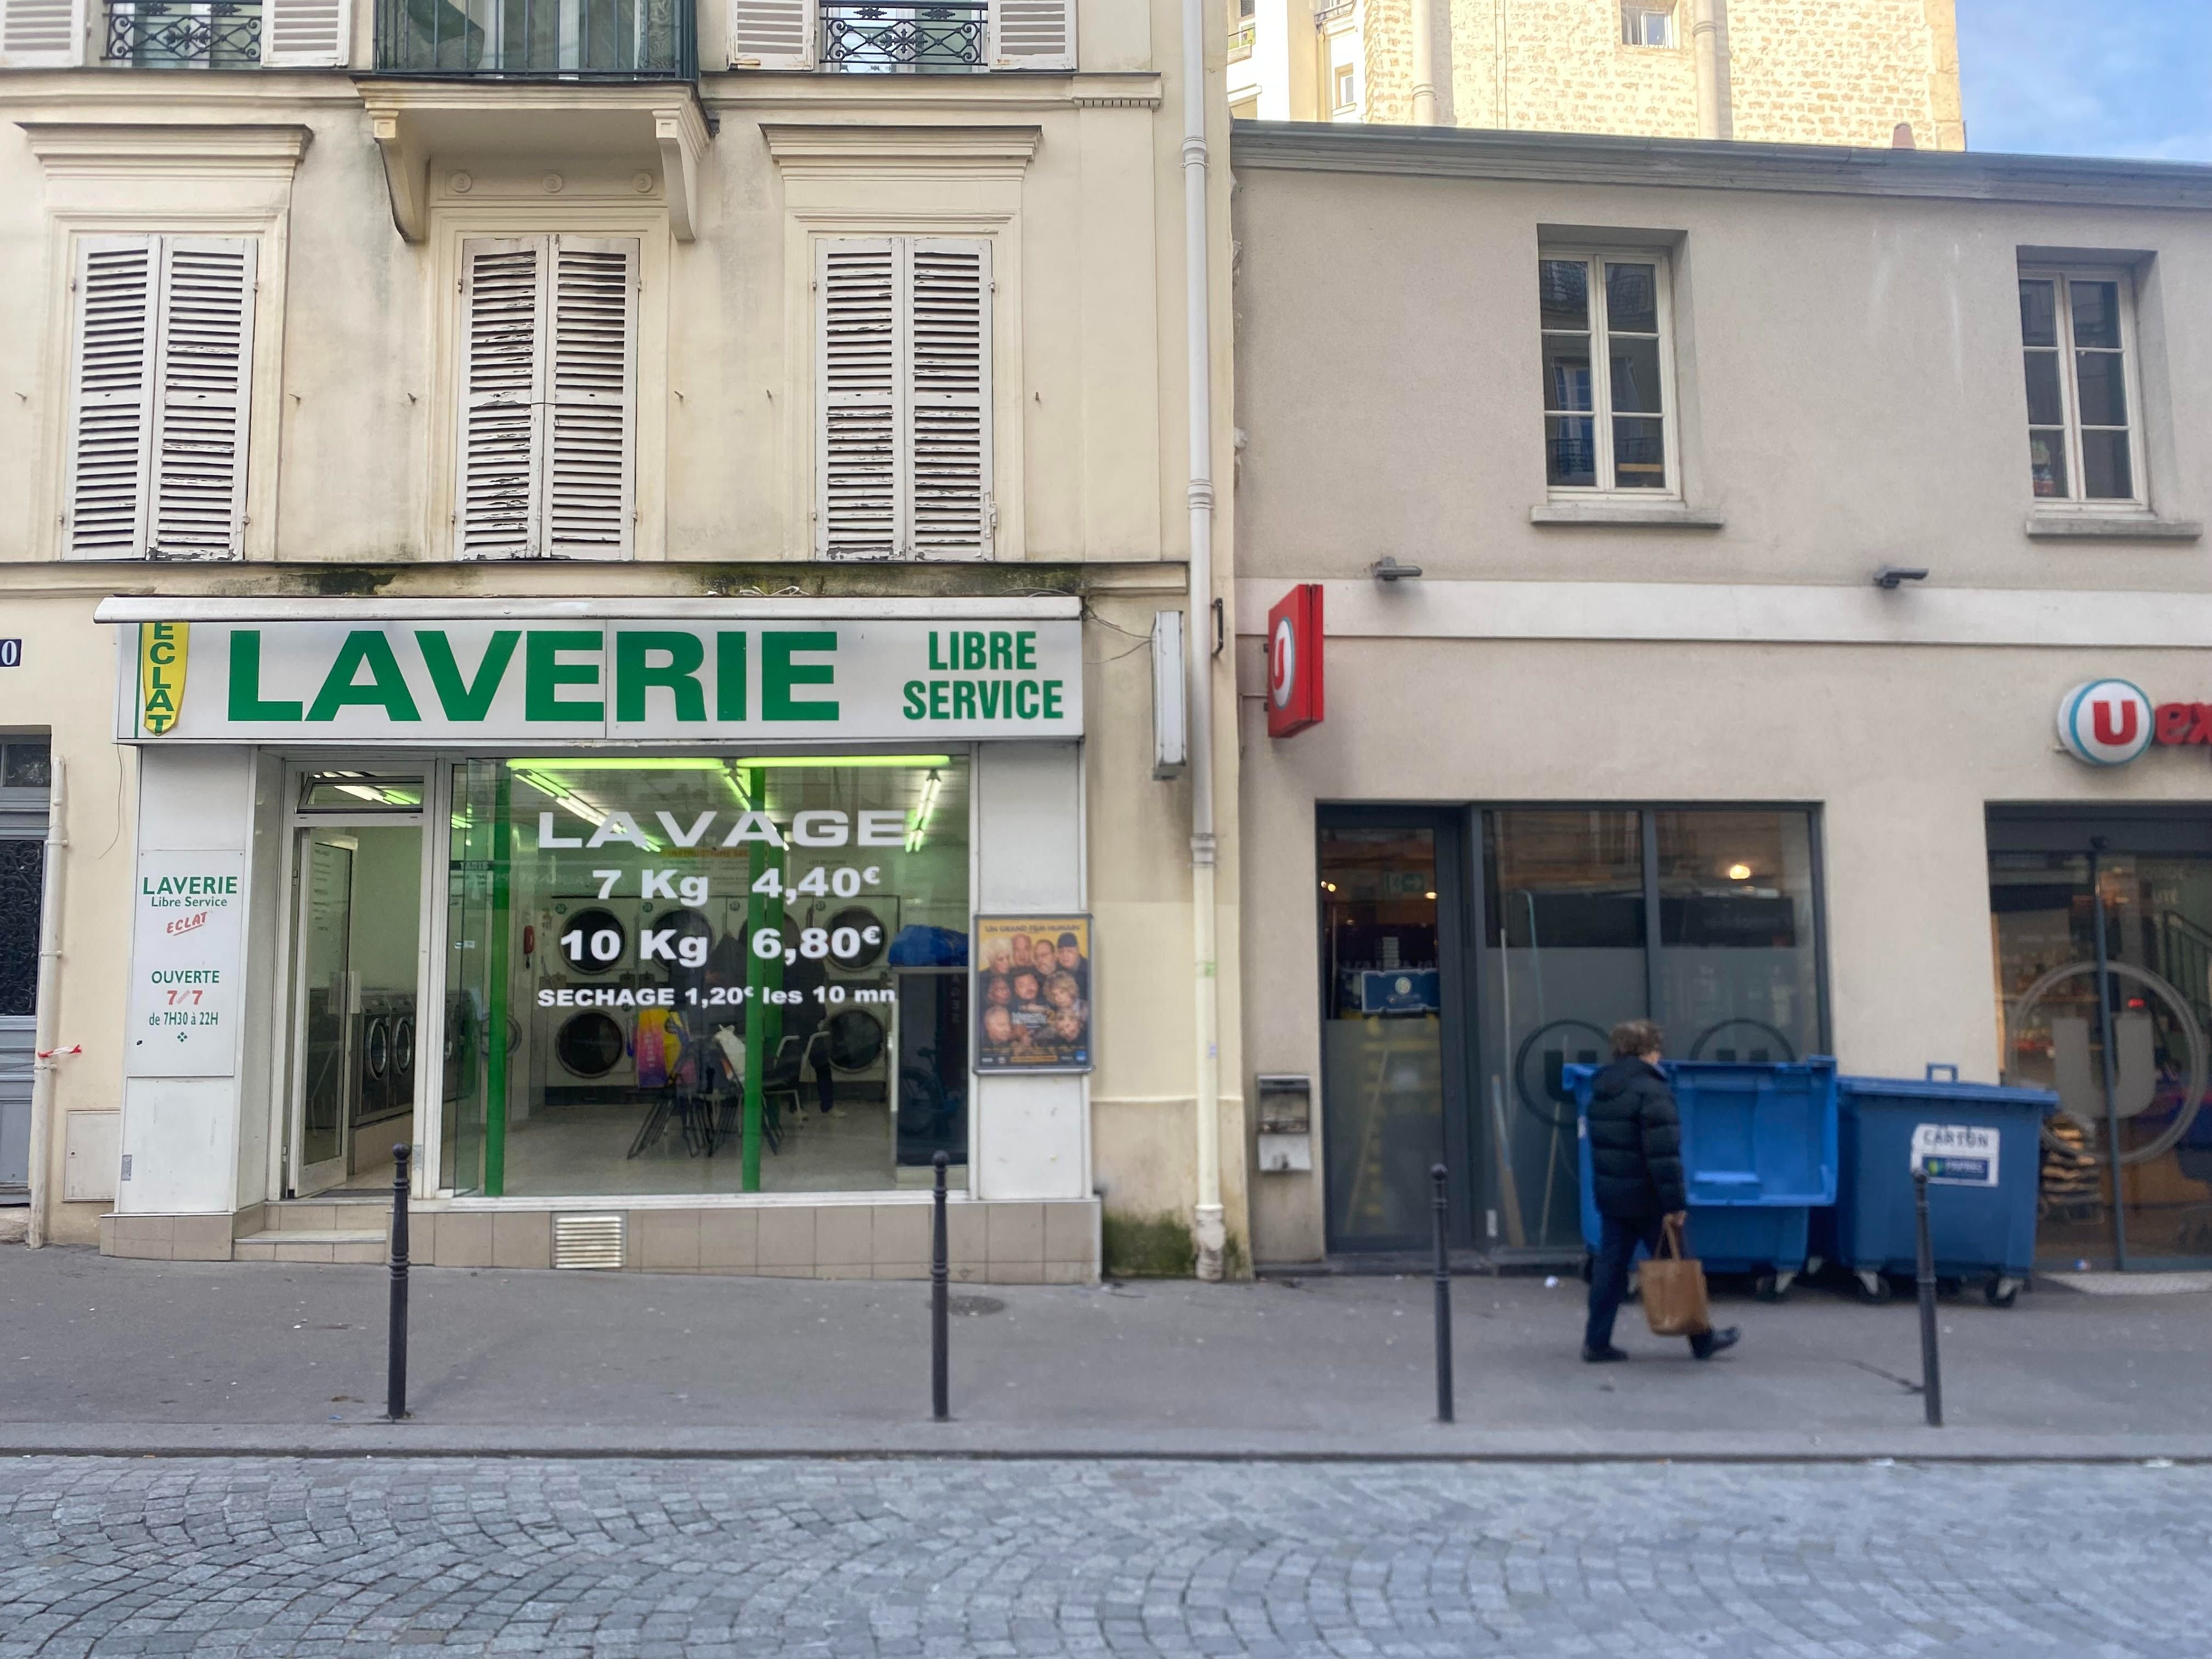 C'est devant cette laverie de la rue de la Tombe-Issoire (XIVe) que la victime s'est écroulée après avoir reçu plusieurs coups de couteau. LP/Benjamin Derveaux